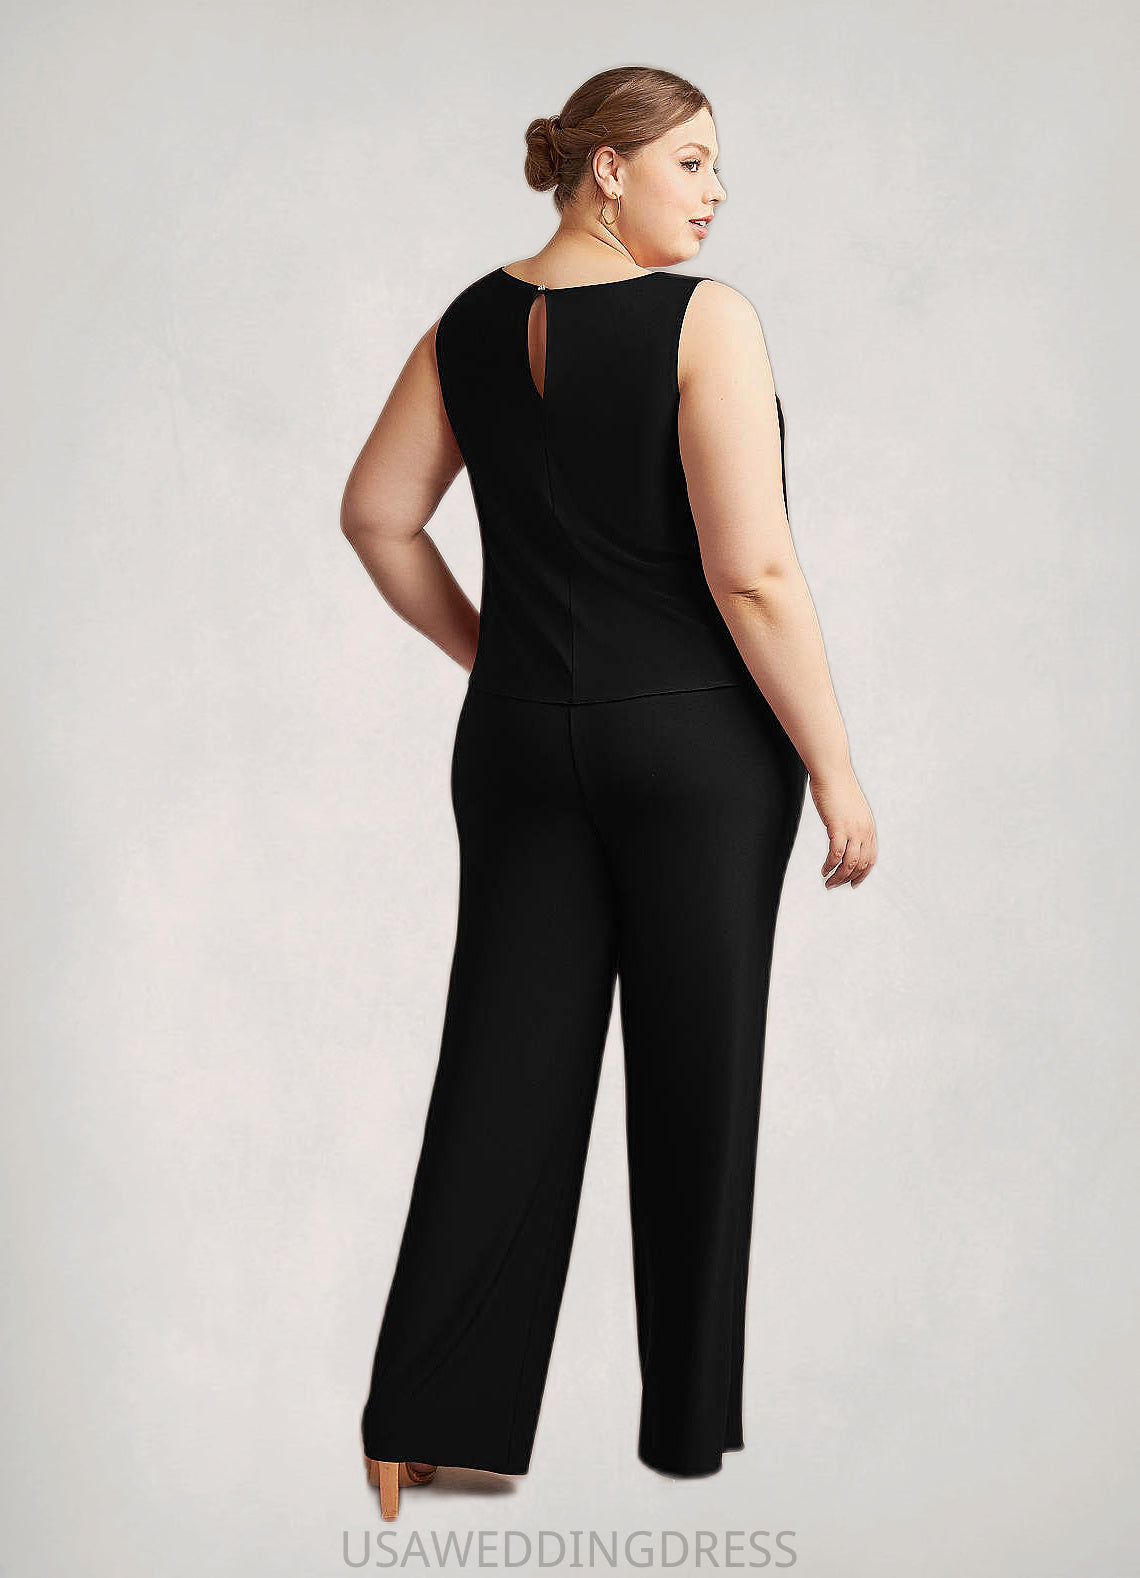 Erika Cover Up Lace Jumpsuit/Pantsuit black DSP0022692